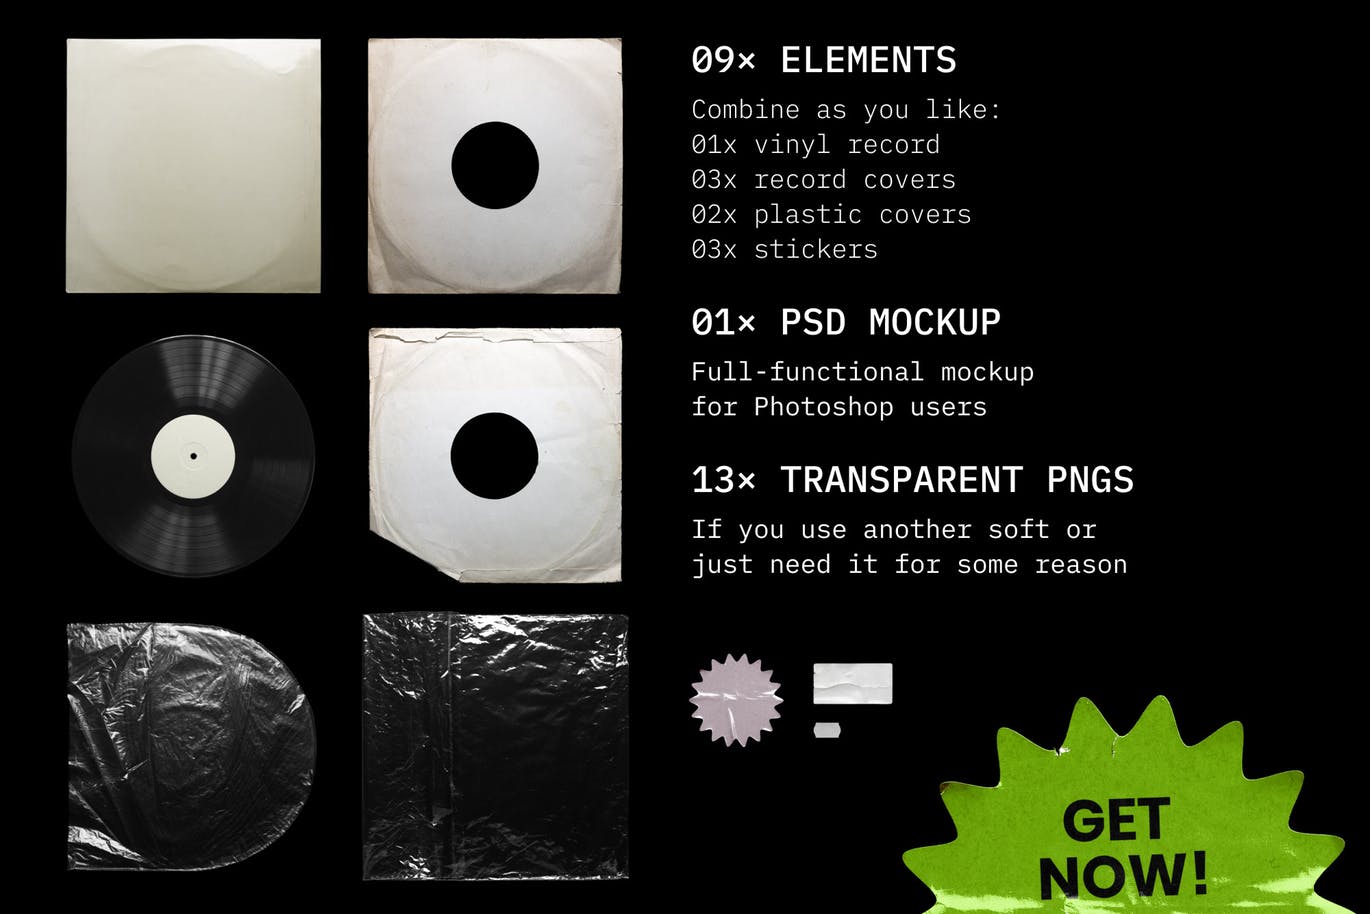 乙烯基唱片包装盒及封面设计图第一素材精选模板 Vinyl Record Mockup插图(9)